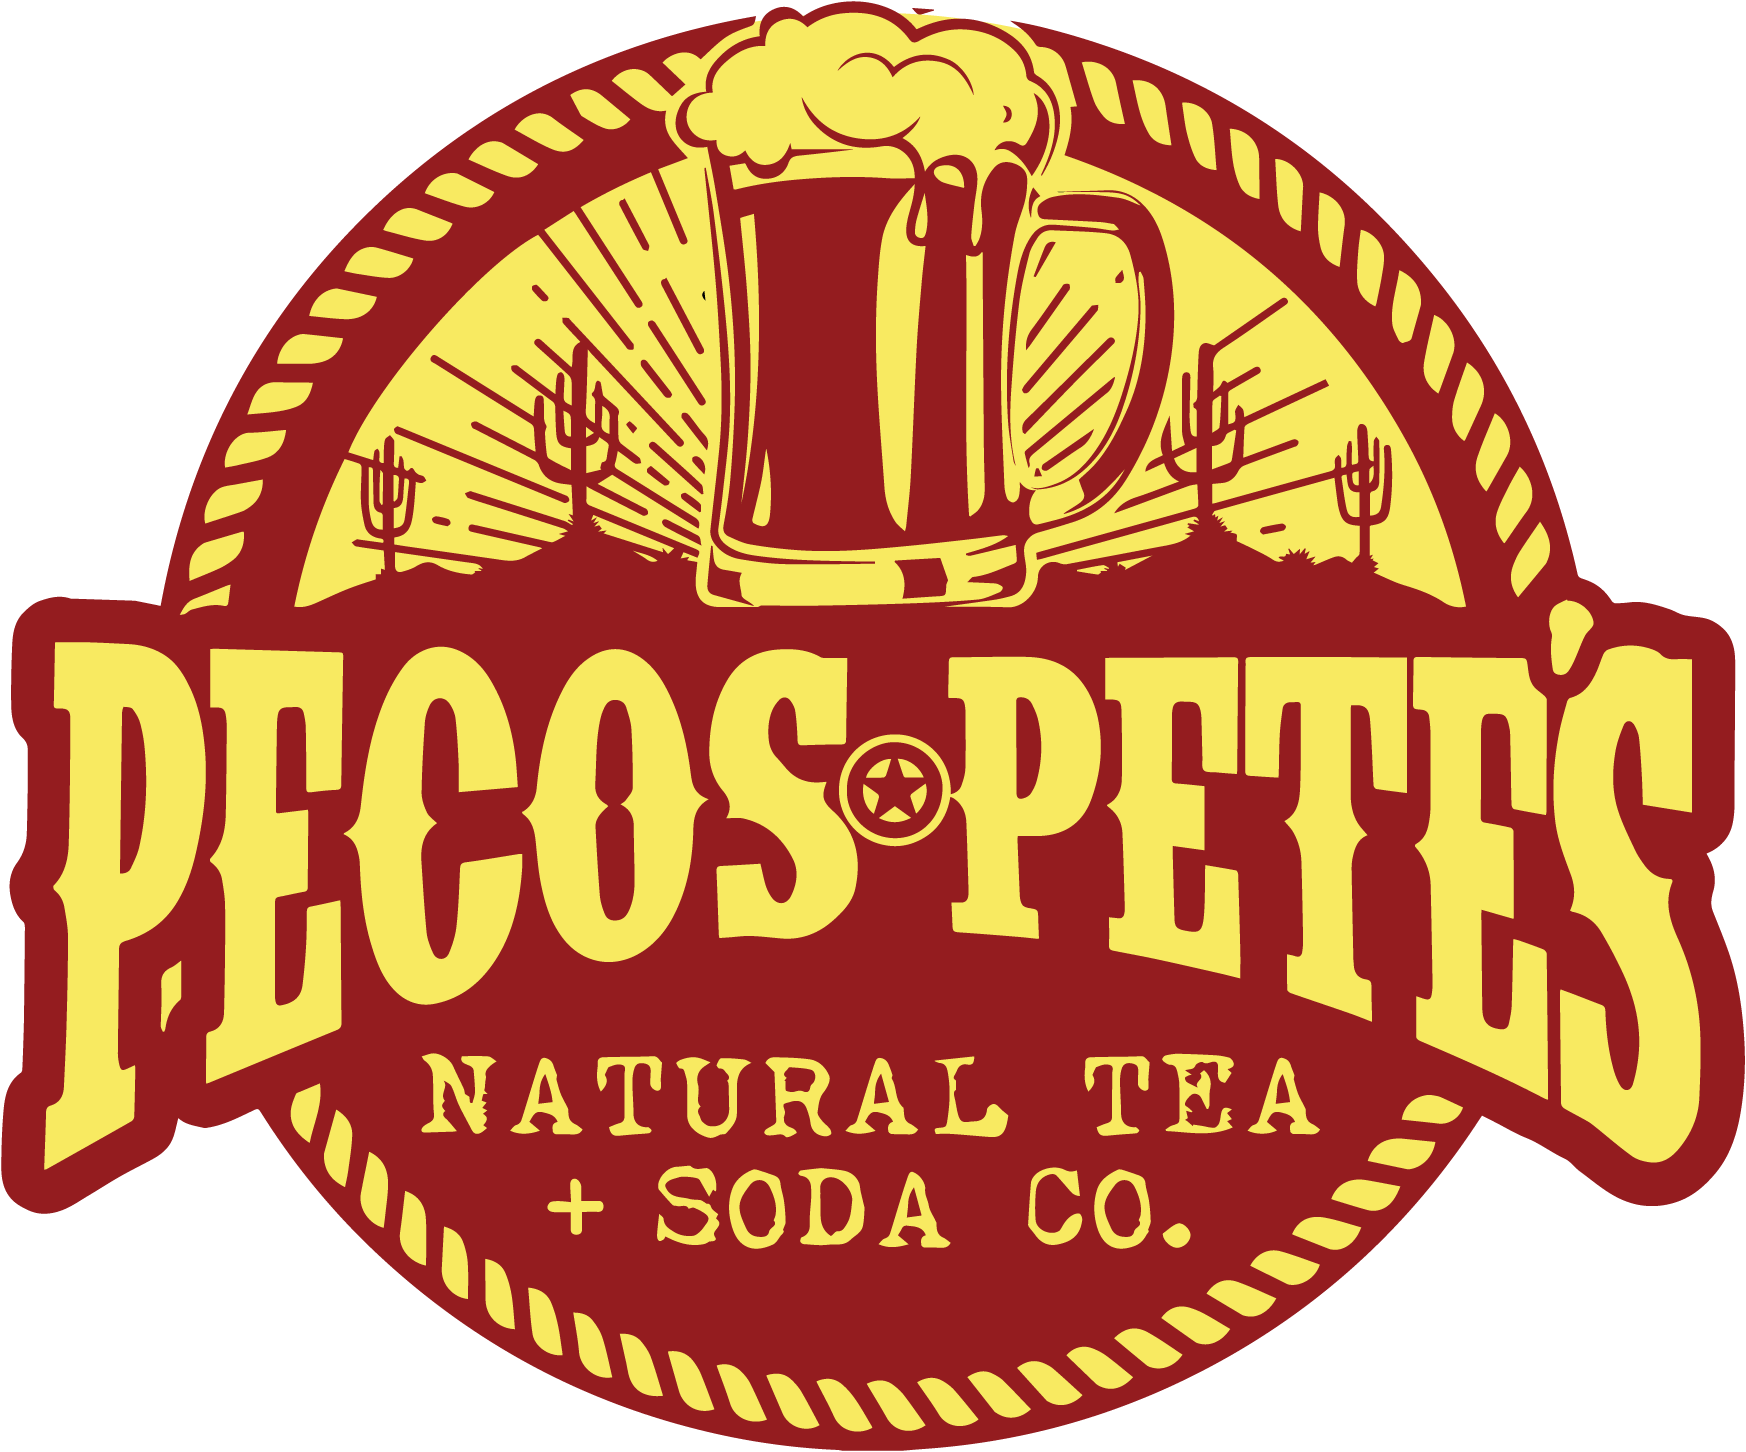  Pecos Petes 